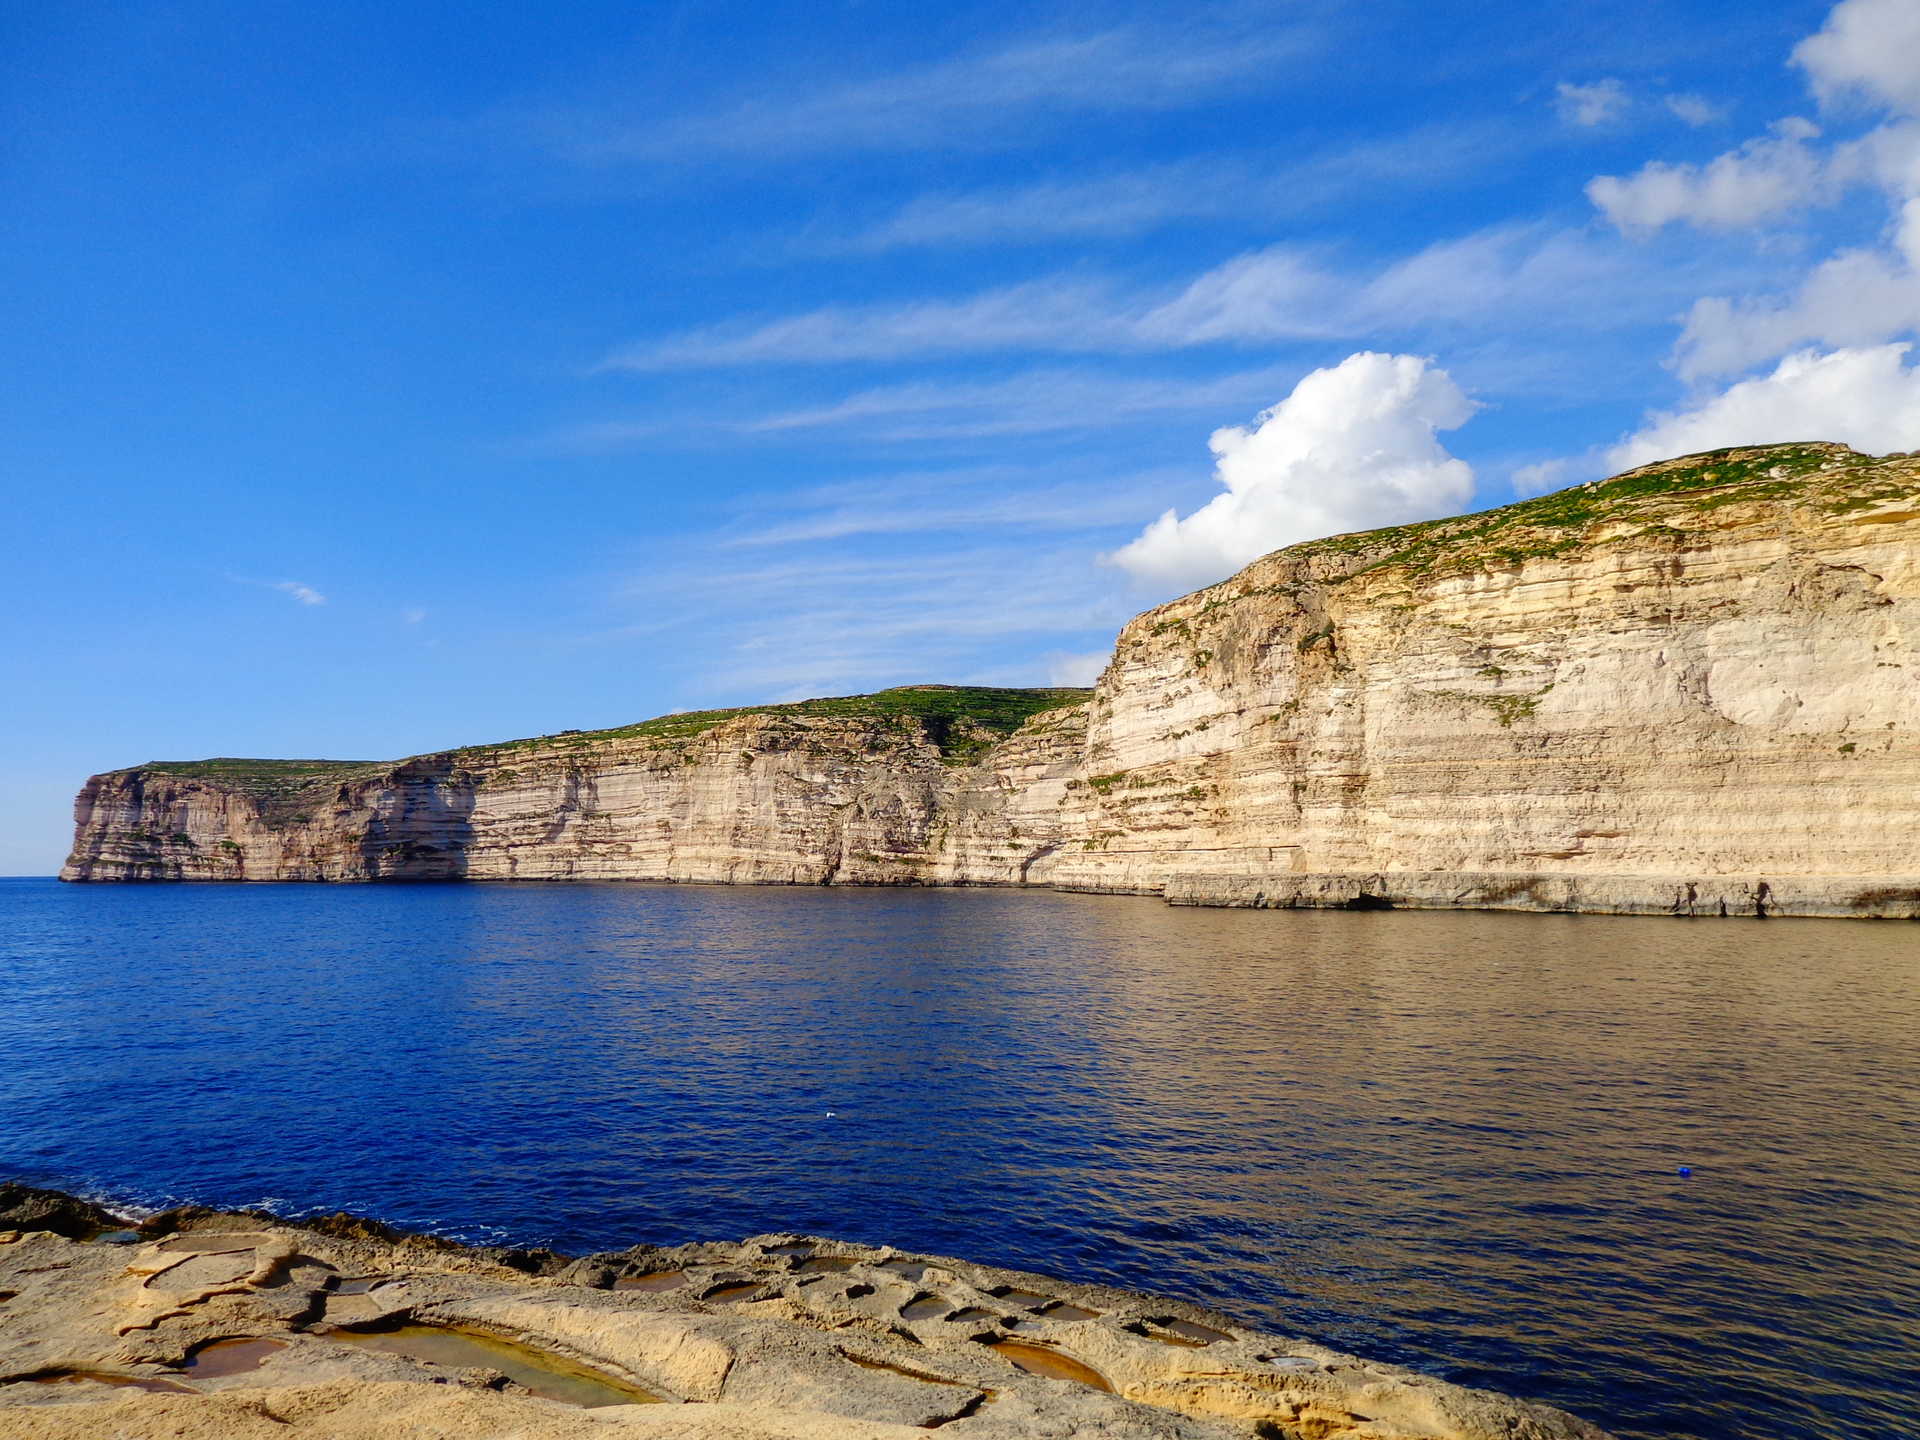 Falaise de calcaire, très présent sur la côte ouest de l'île principale notamment à Dingli cliffs